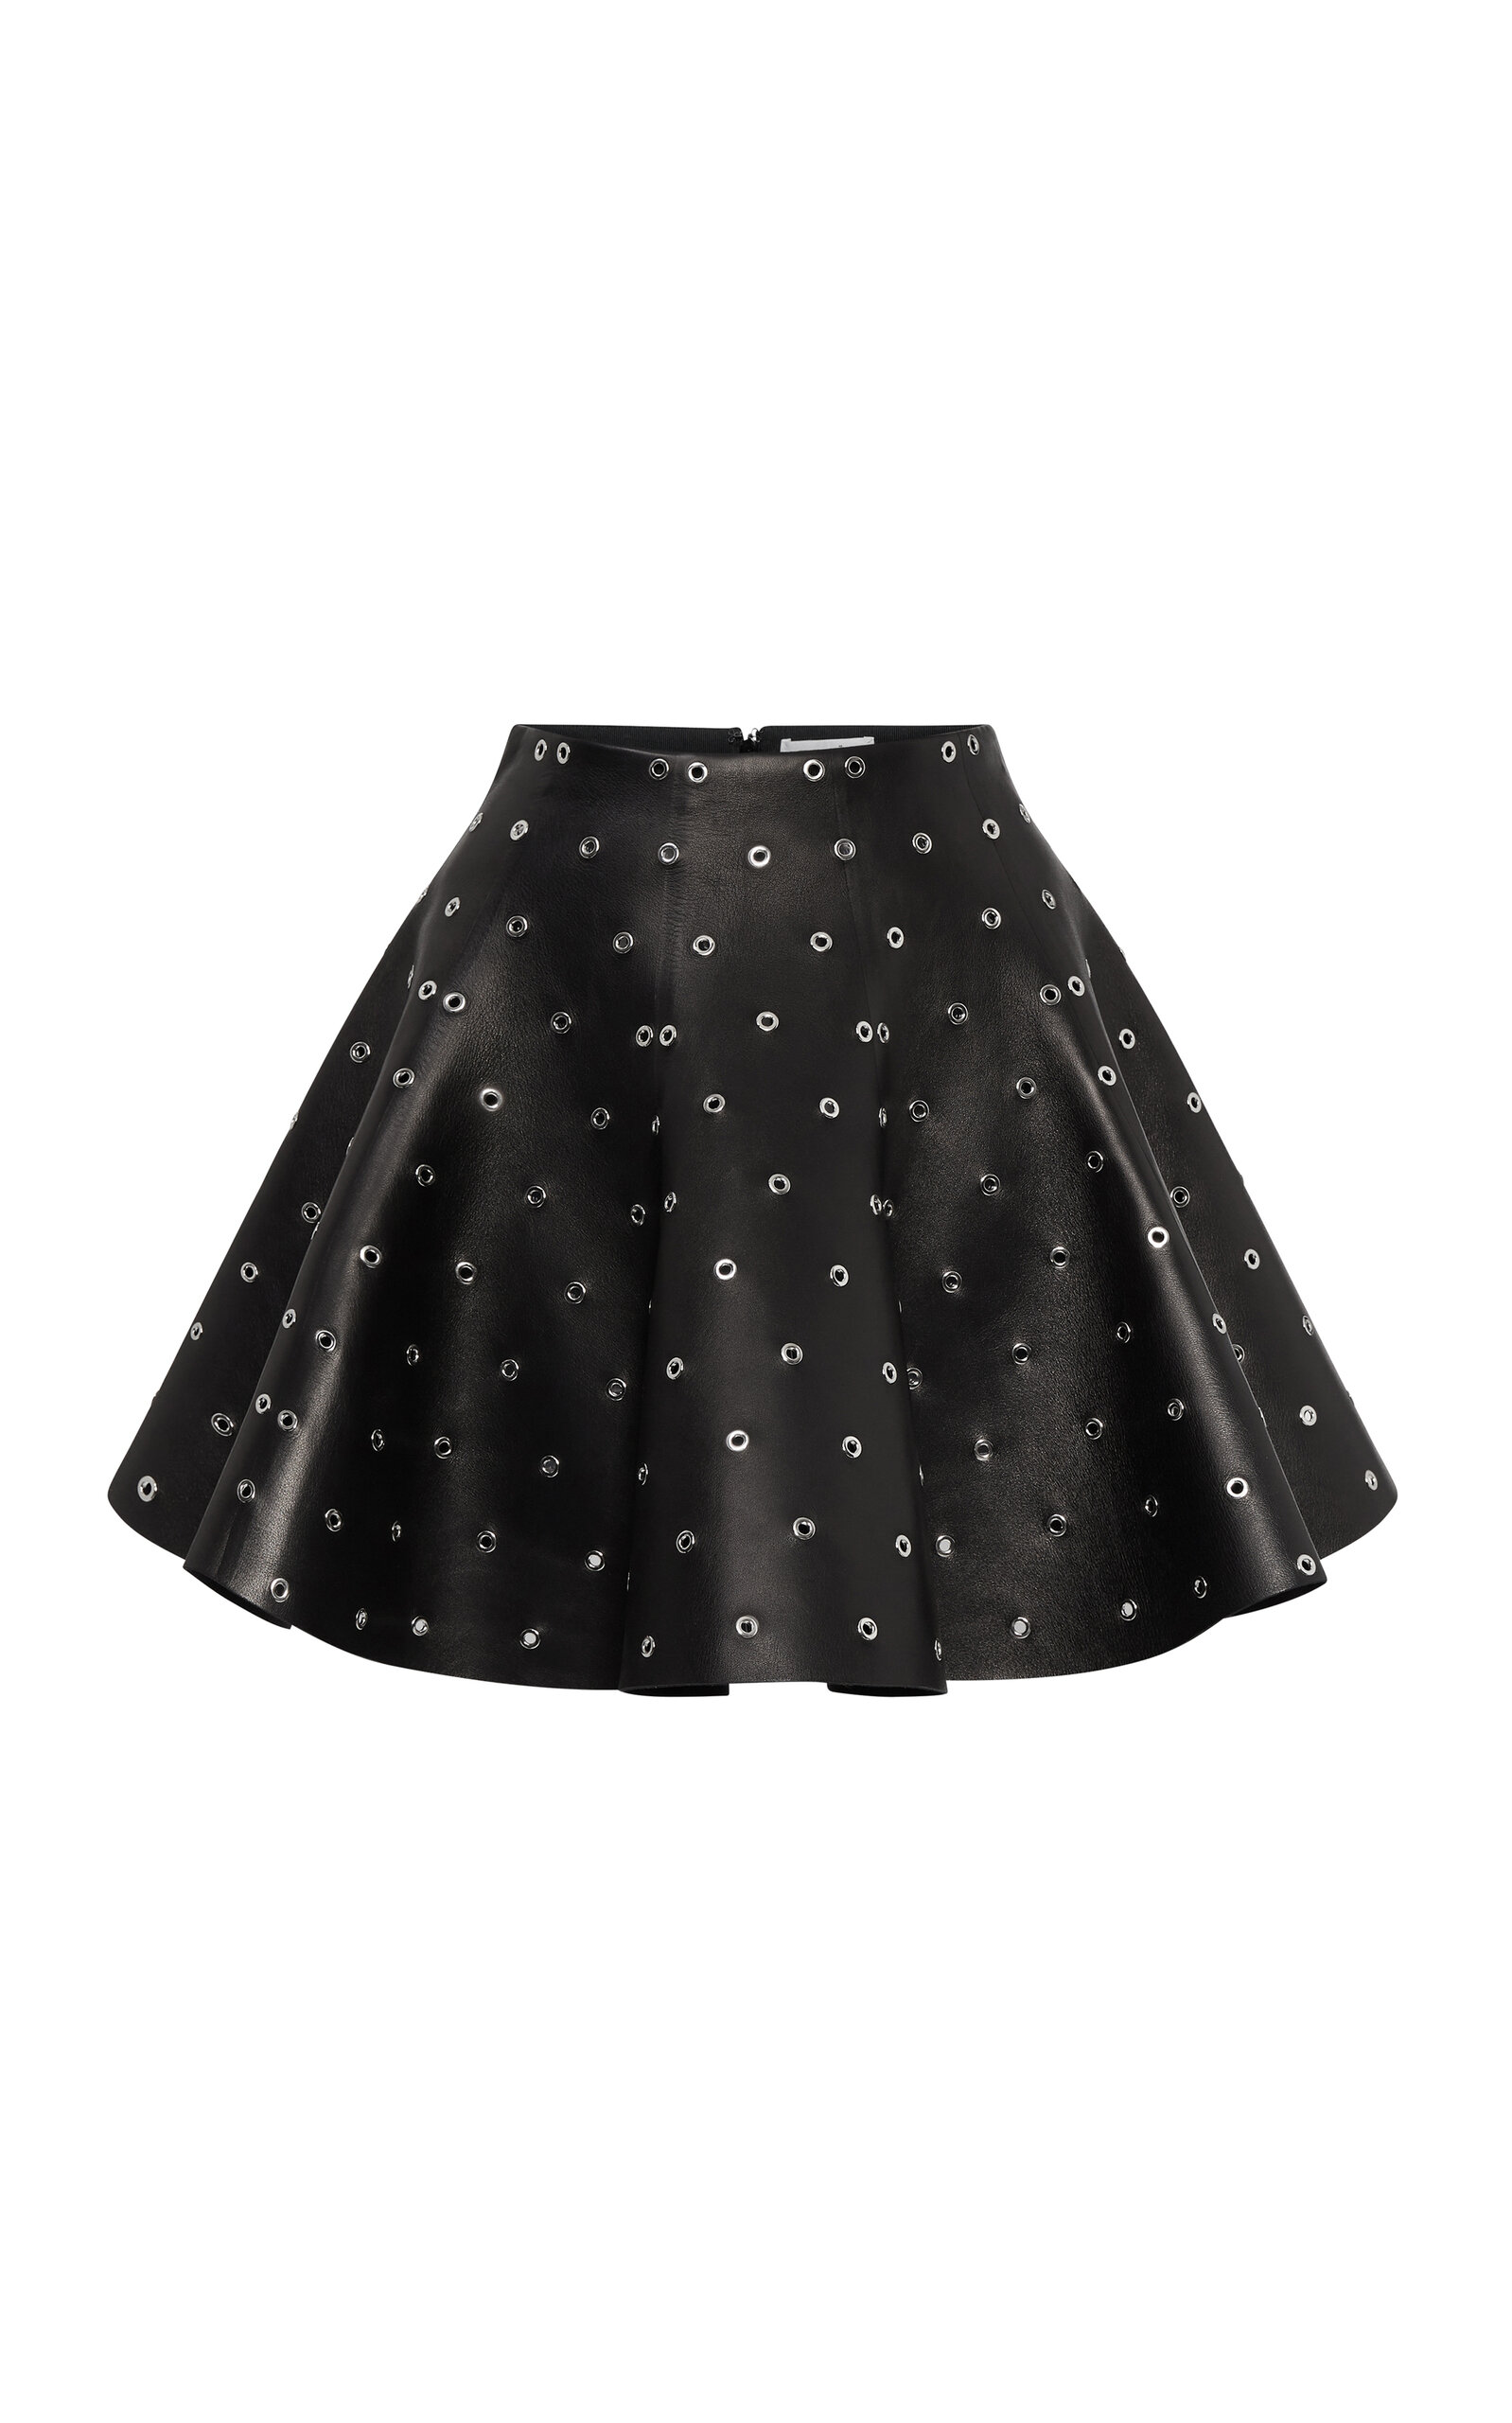 ALAÏA Eyelet-Embellished Leather Mini Skirt